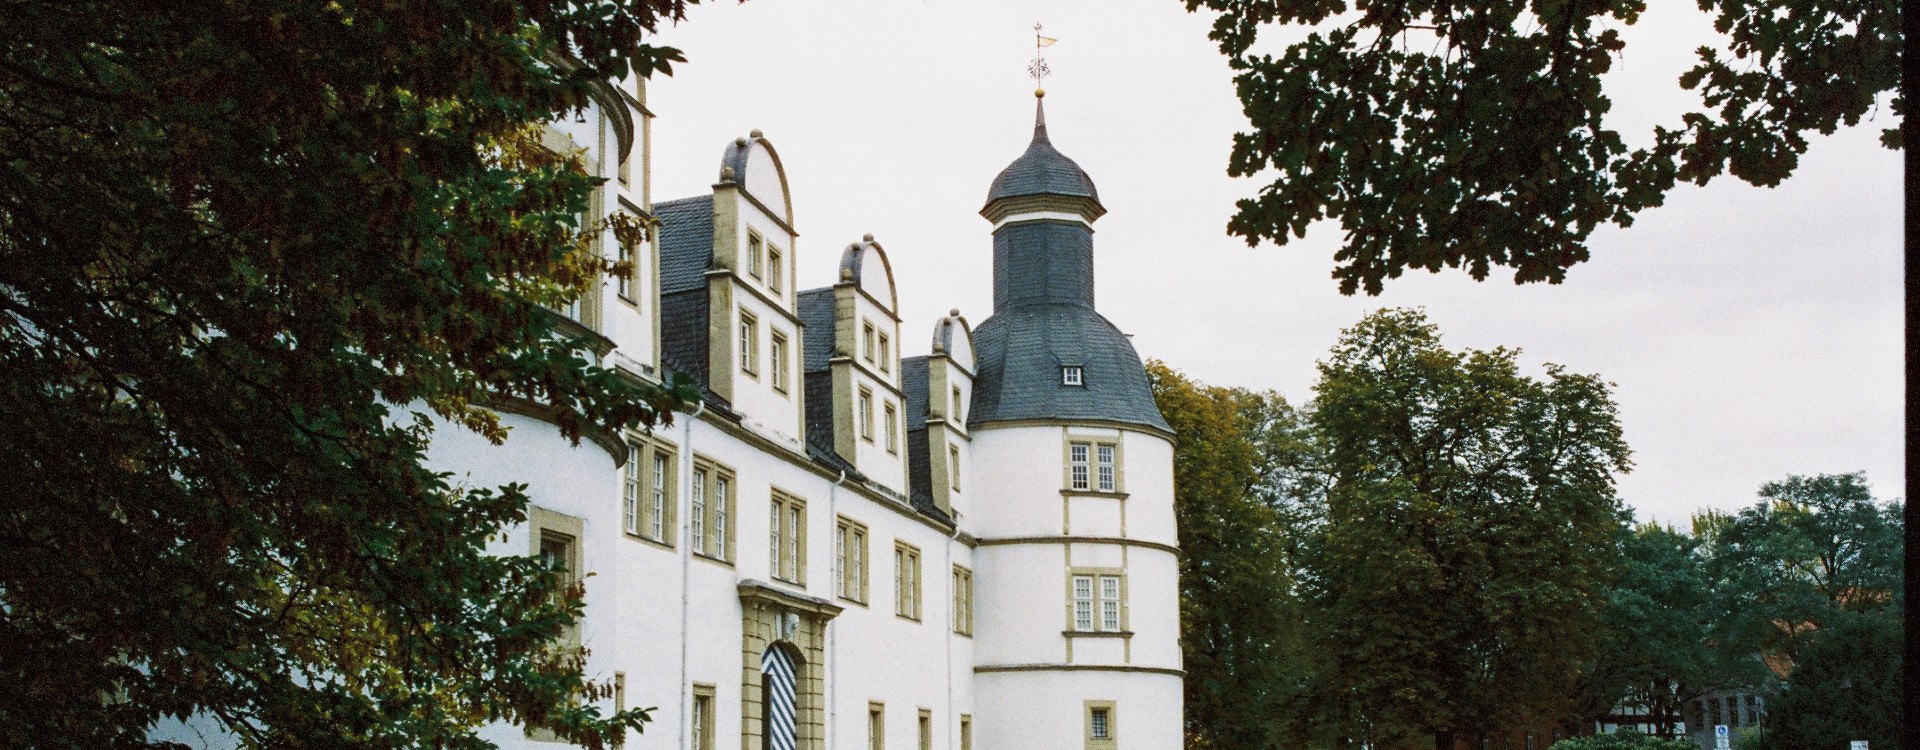 Westlicher Flügel von Schloss Neuhaus, © Johannes Höhn